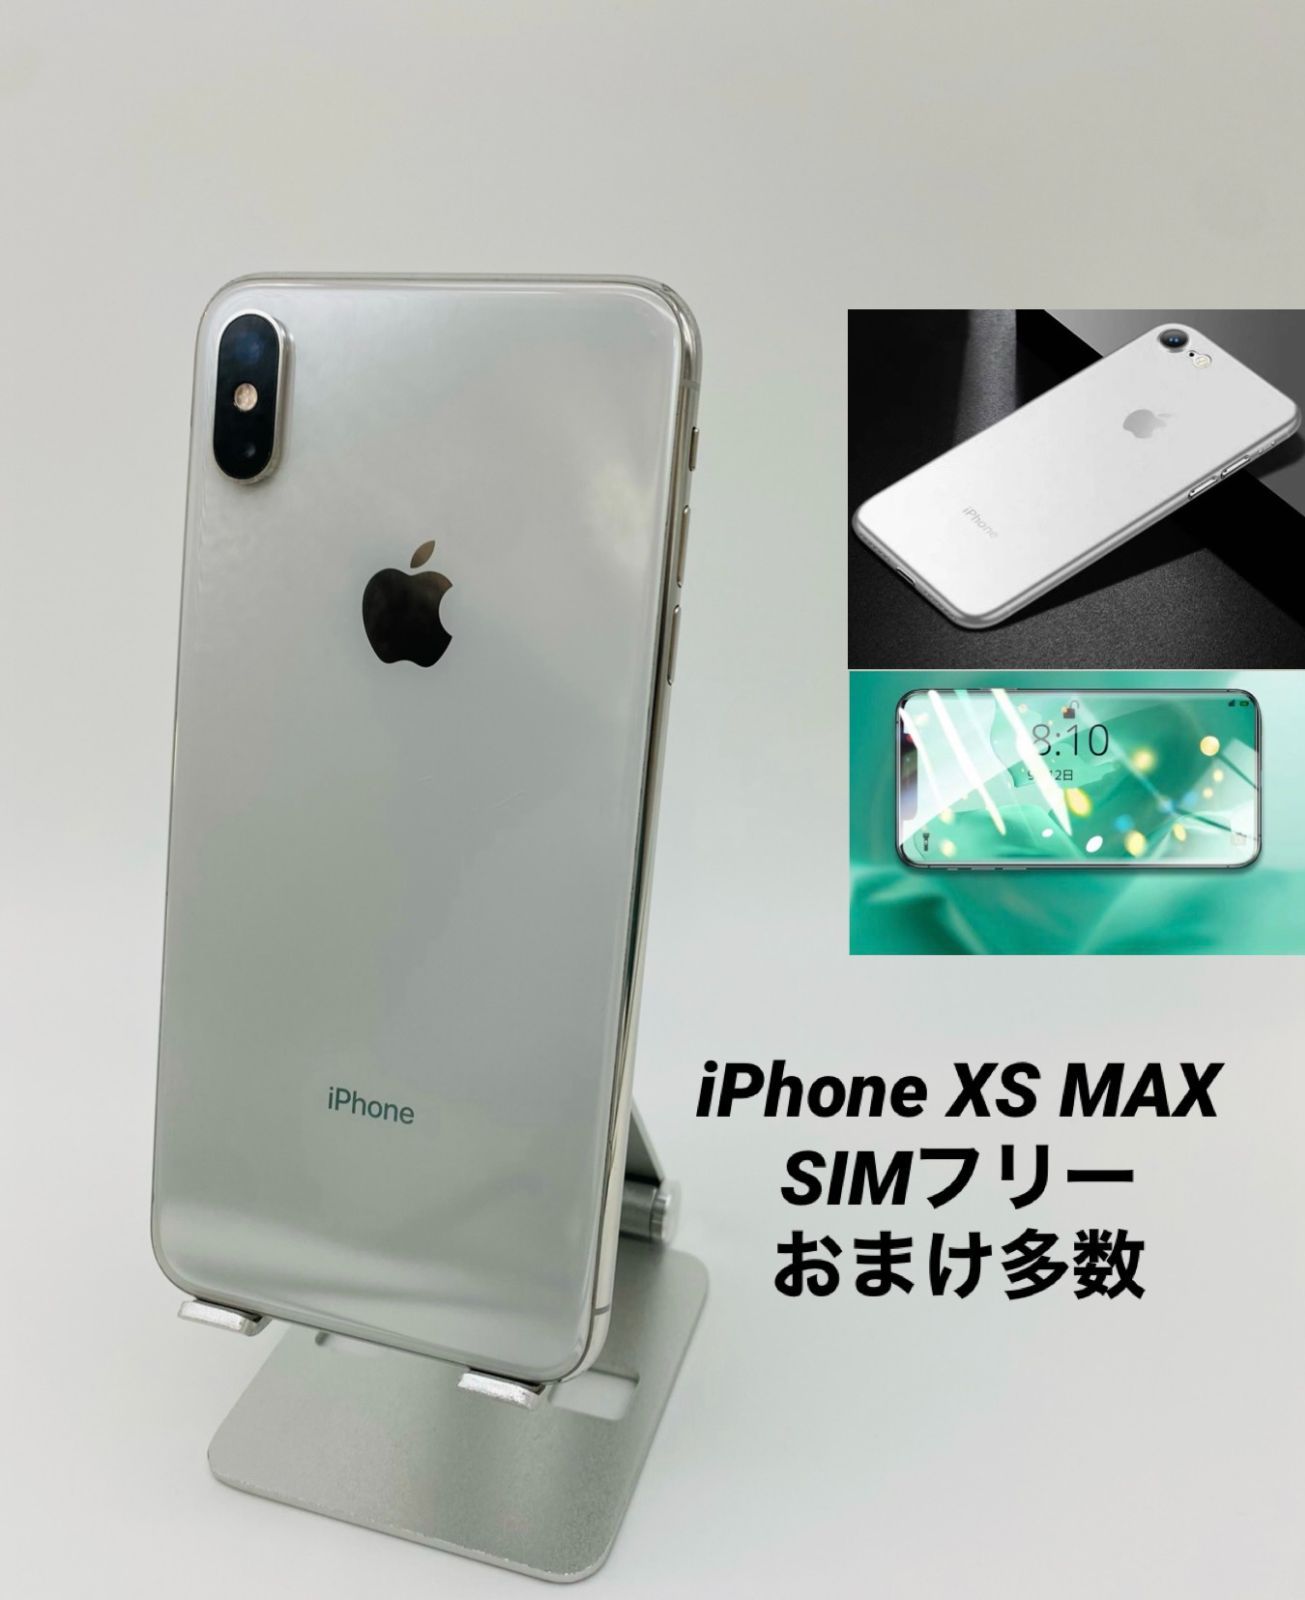 iPhone XS 512GB SIMフリー バッテリー100% - スマートフォン本体